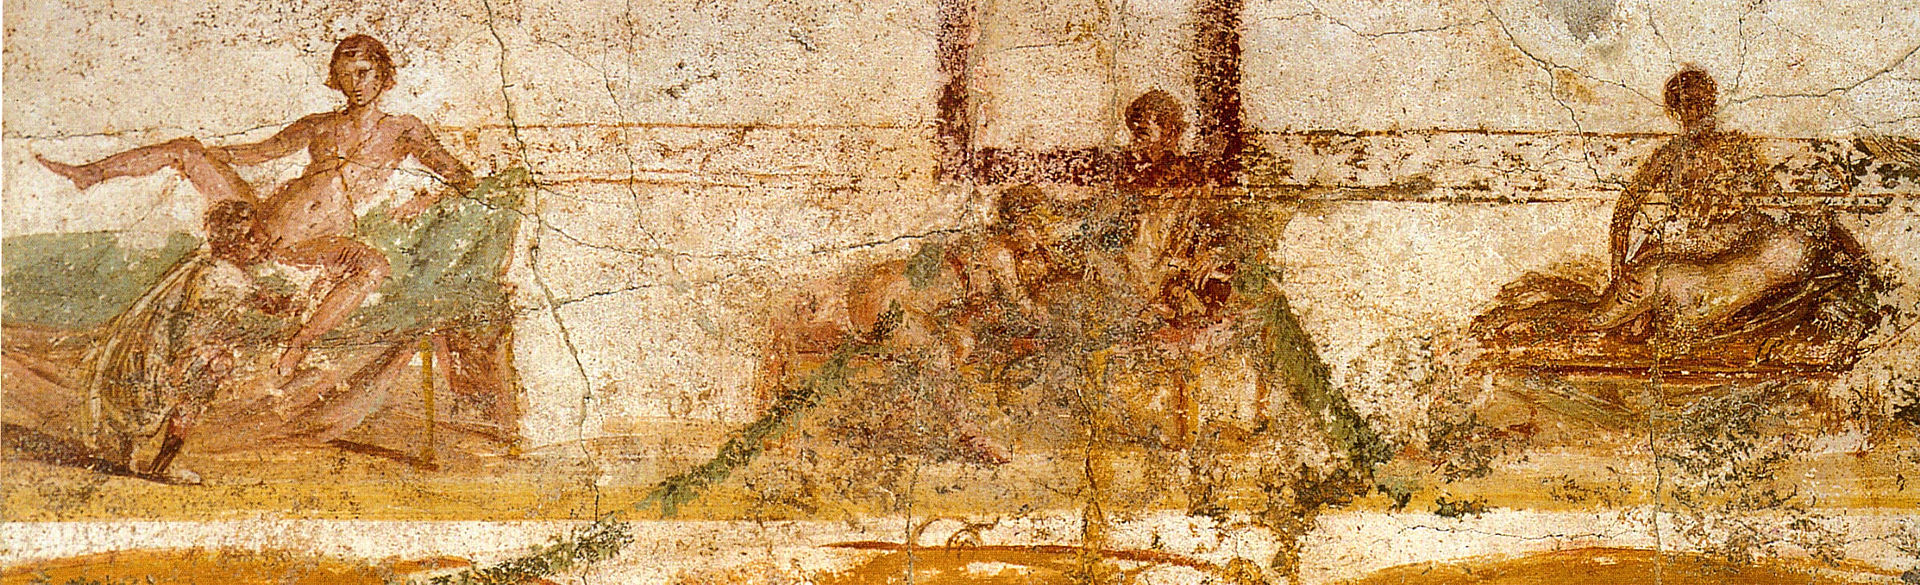 Эротическое искусство в Помпеях и Геркулануме - Erotic art in Pompeii and Herculaneum